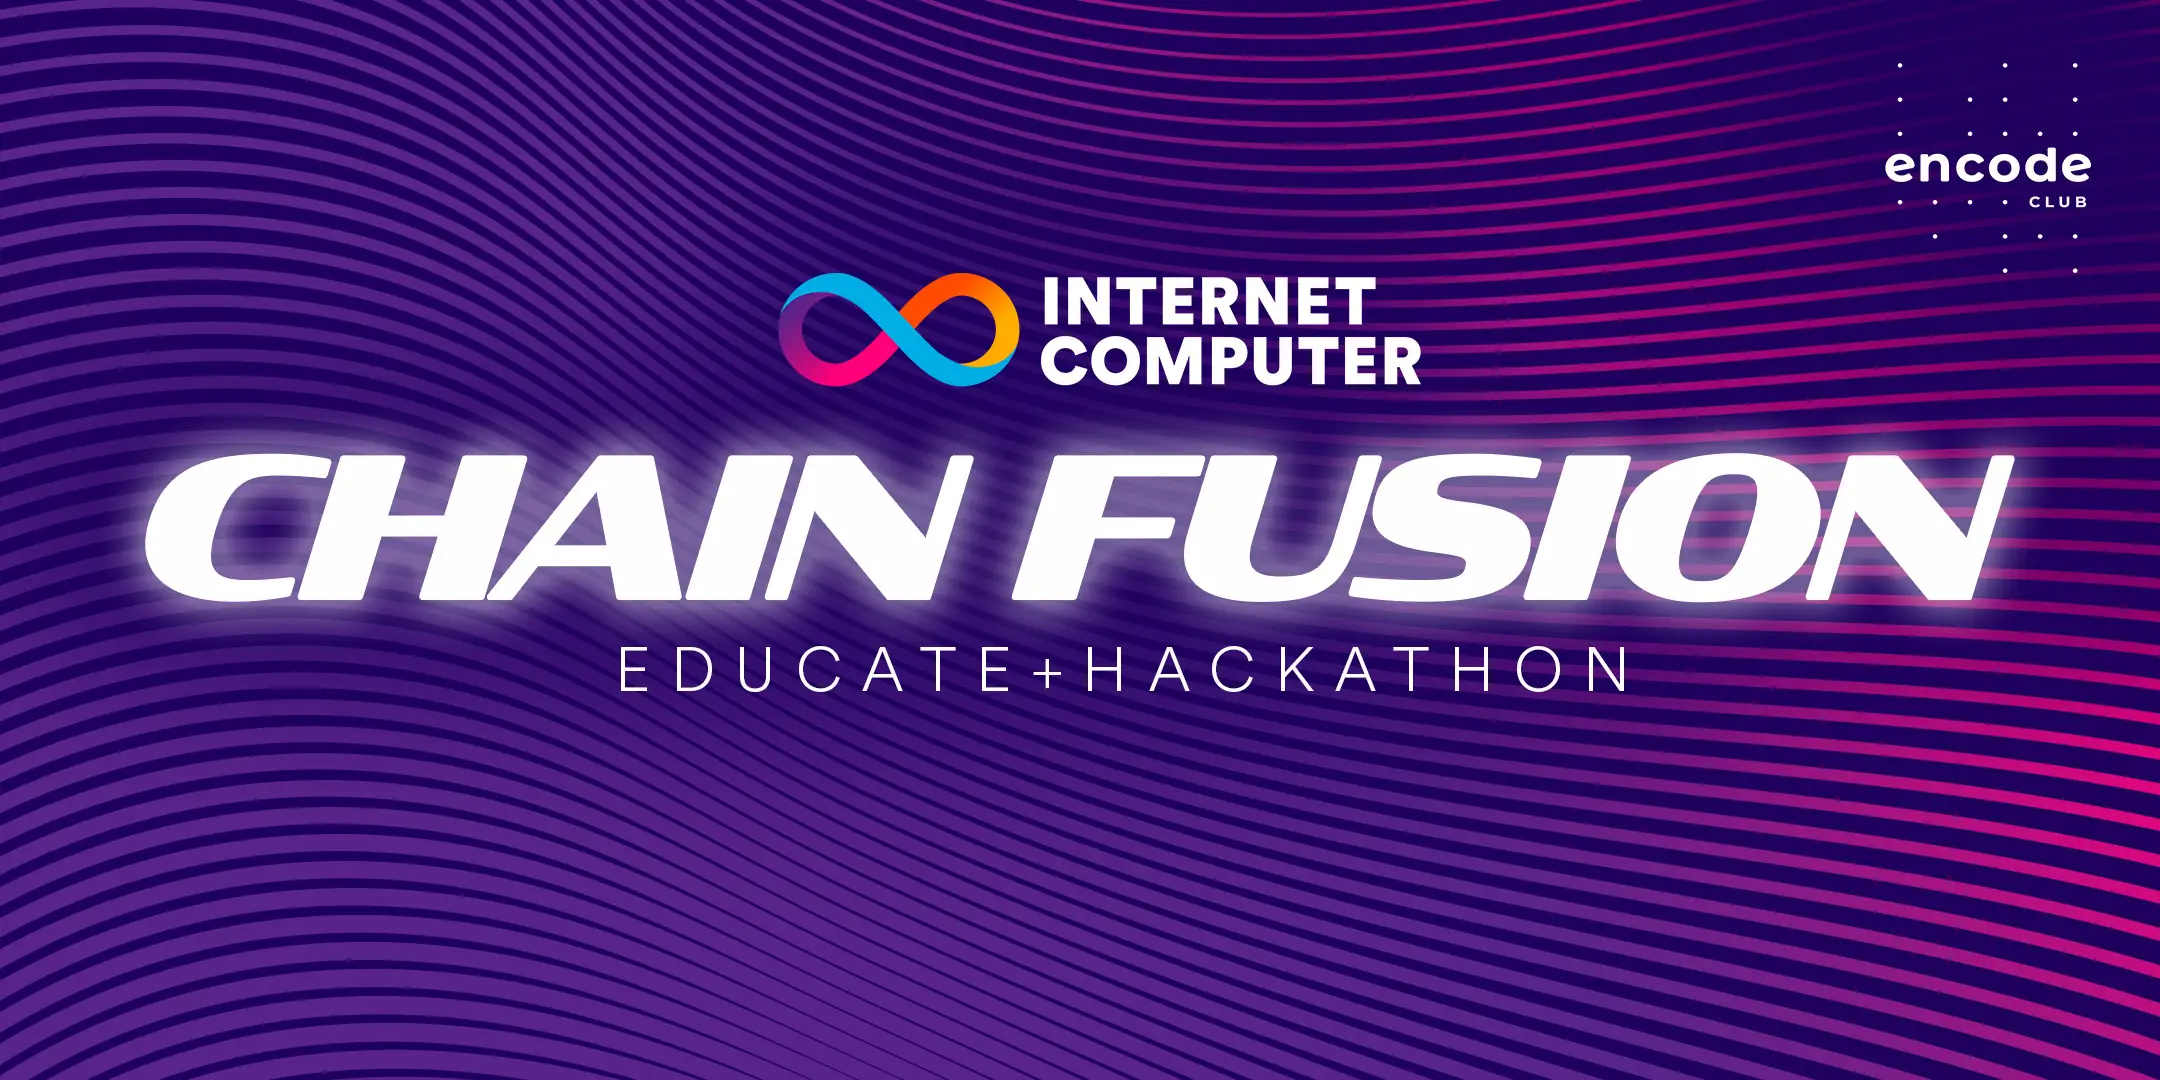 ICP Chain Fusion Educate + Hackathon